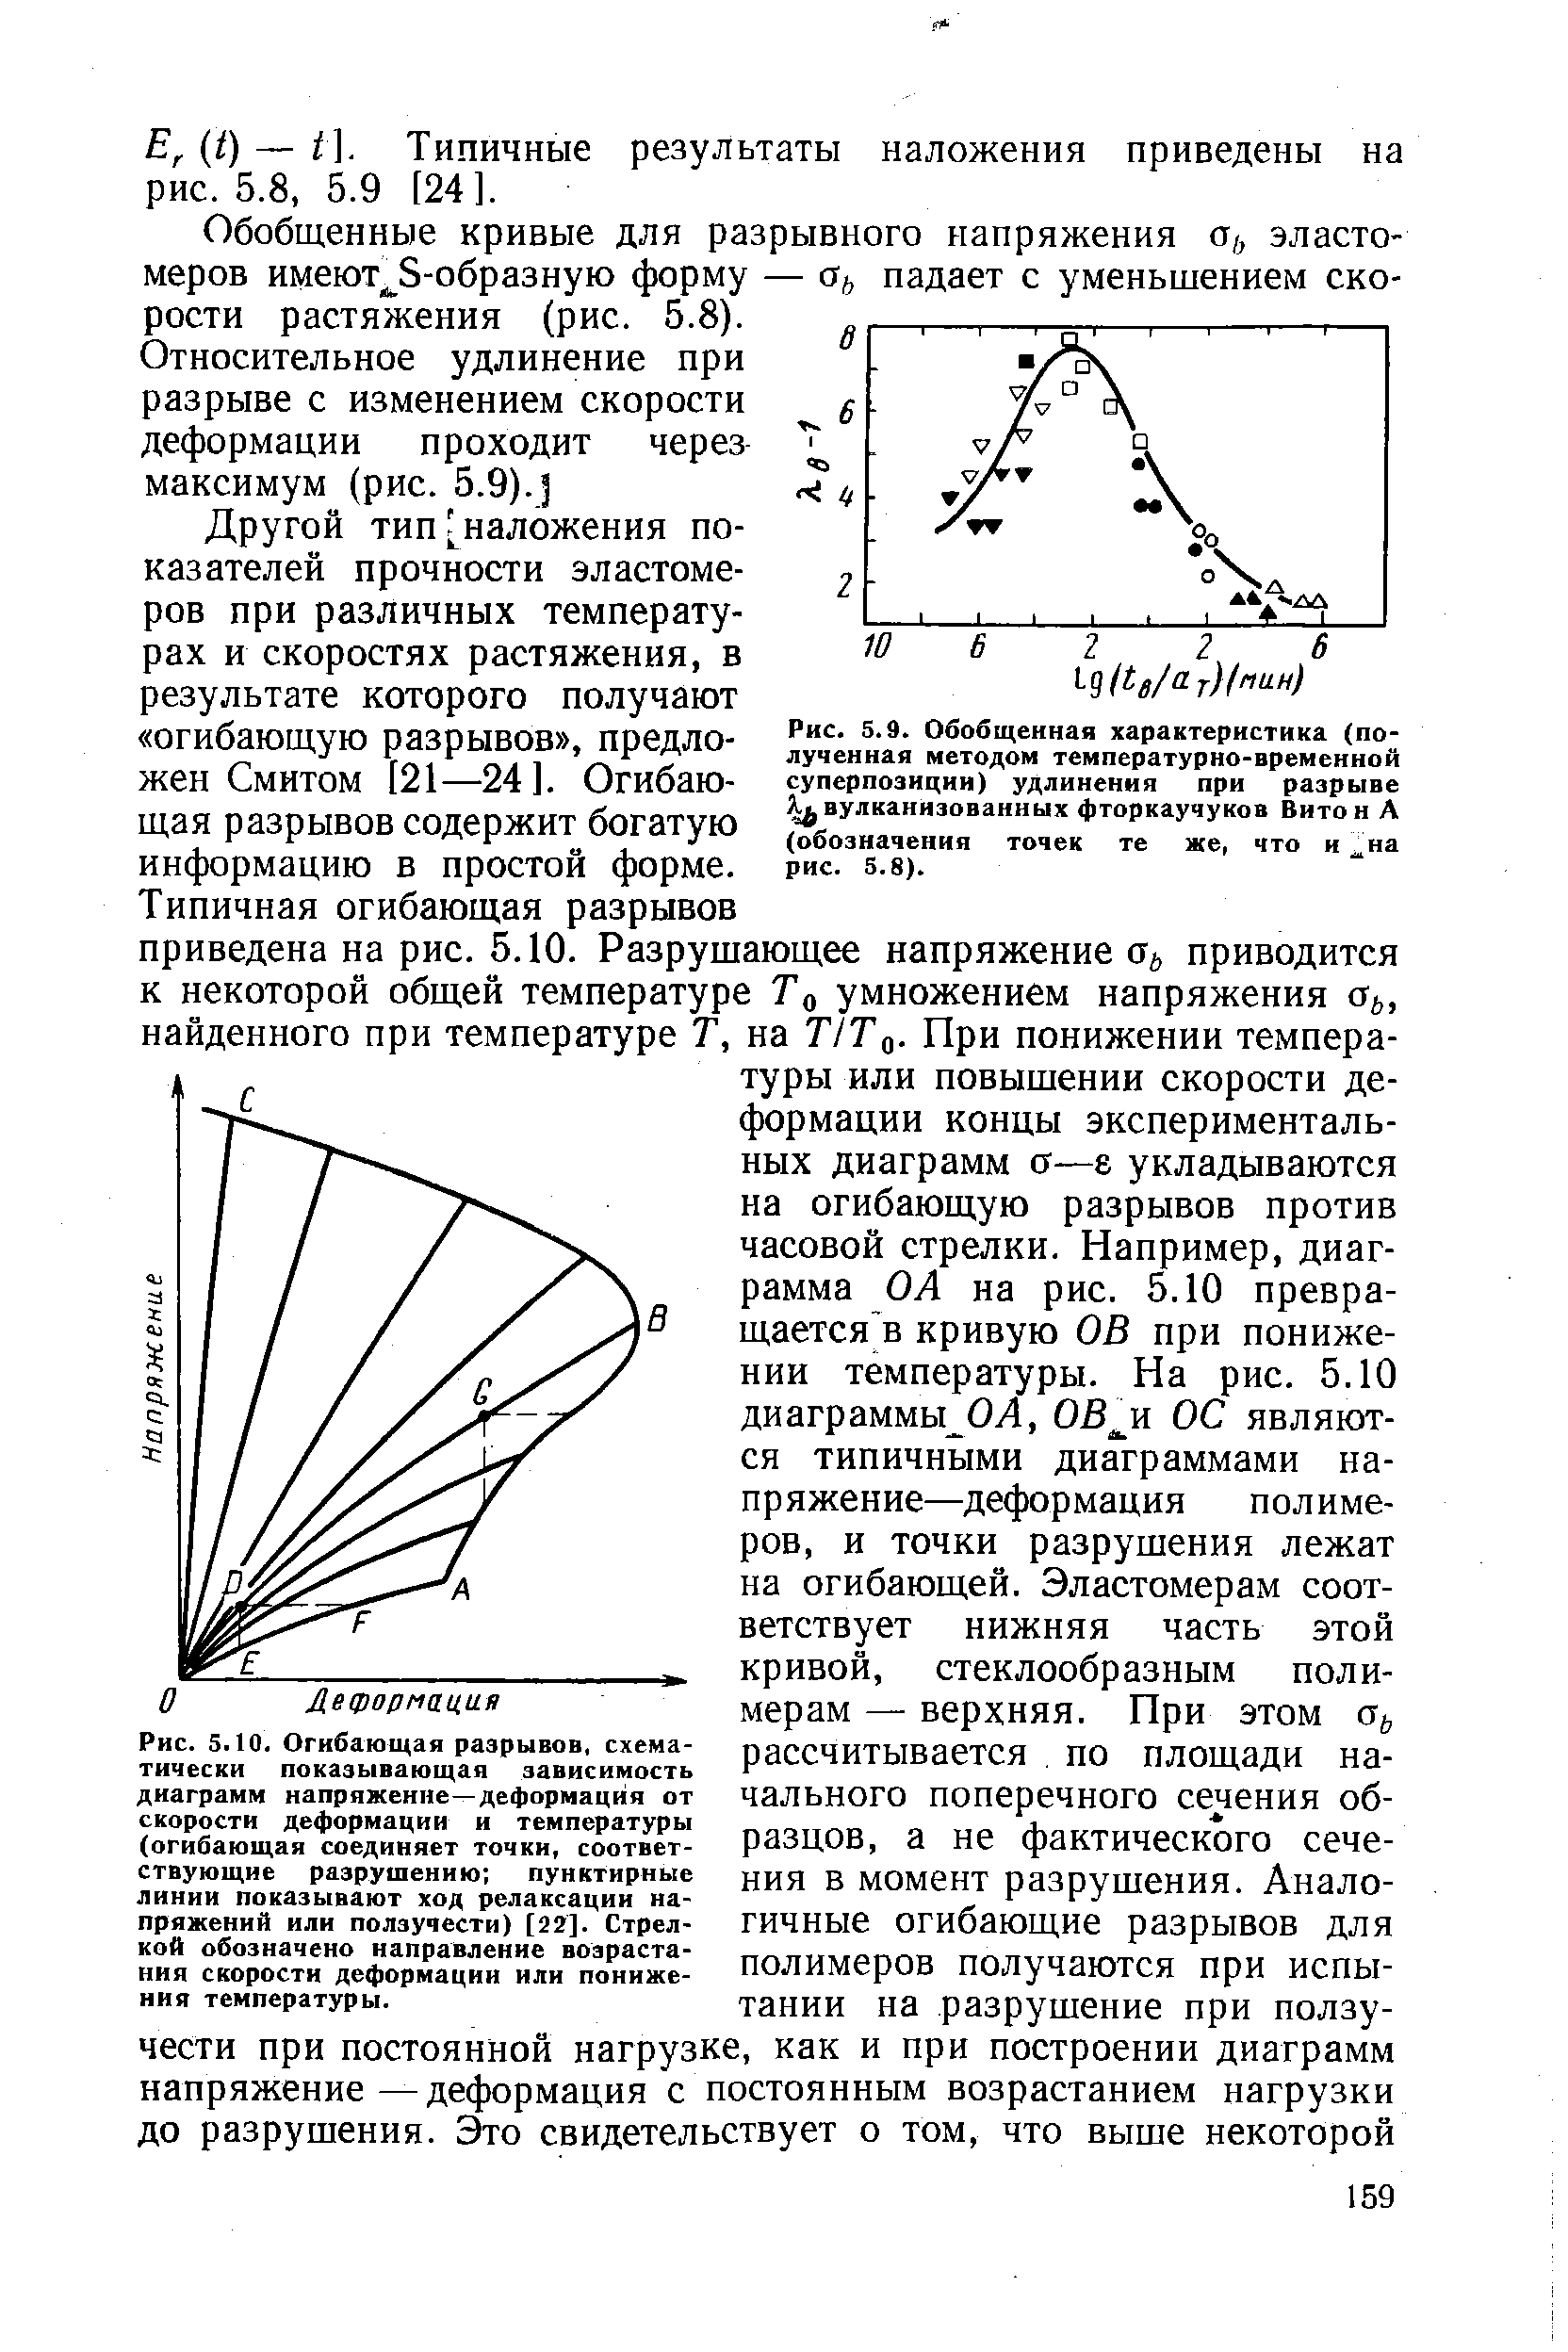 Рис. 5.9. Обобщенная характеристика (полученная методом температурно-временной суперпозиции) удлинения при разрыве вулканизованных фторкаучуков Витон А (обозначения точек те же, что и на рис. 5.8).
